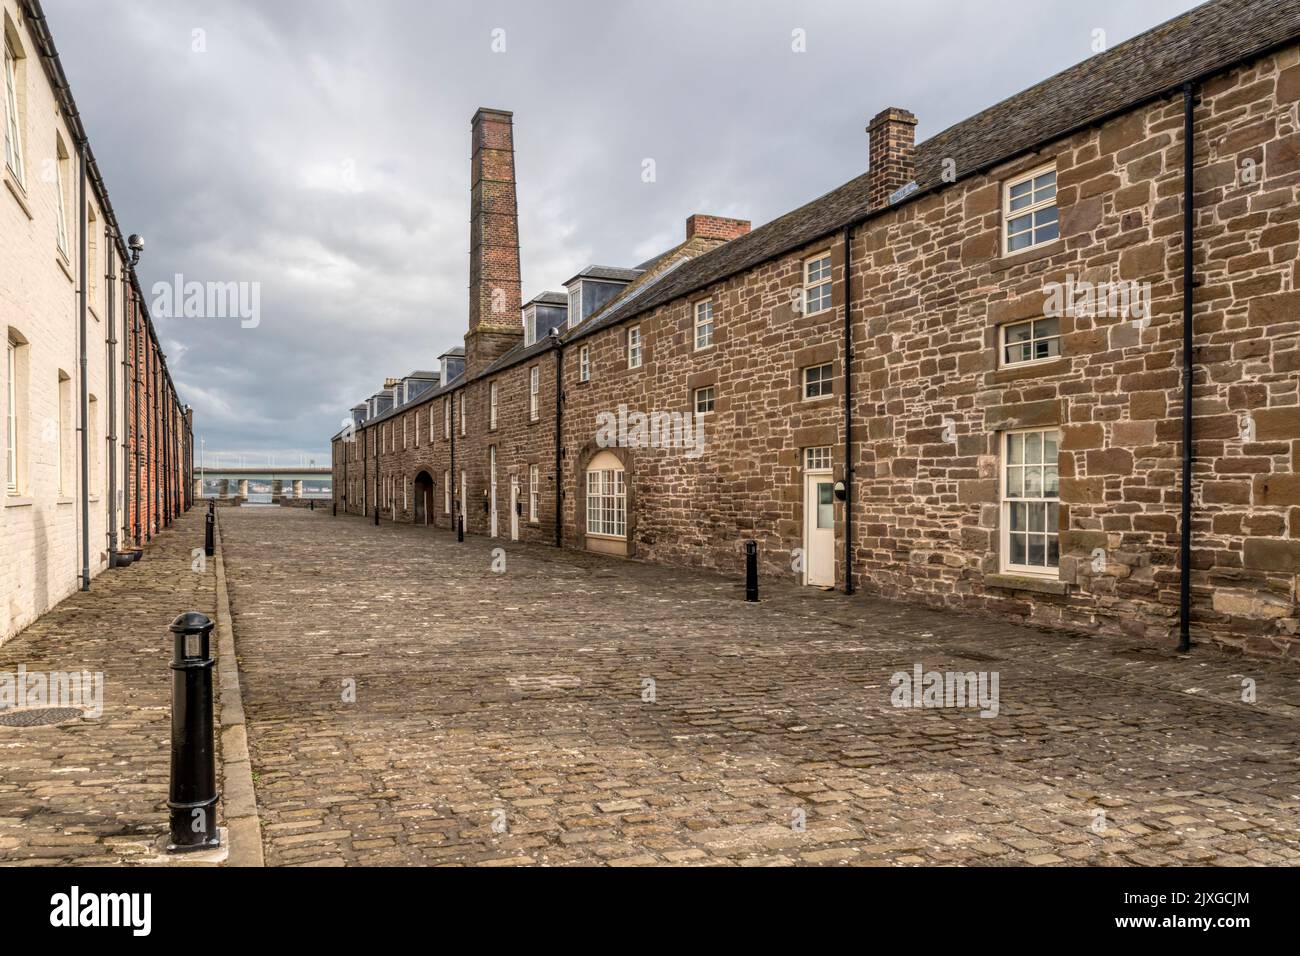 Chandlers Lane, Dundee contient des maisons converties des anciens ateliers portuaires datant de 1837. La cheminée marque les forgerons d'origine. Banque D'Images